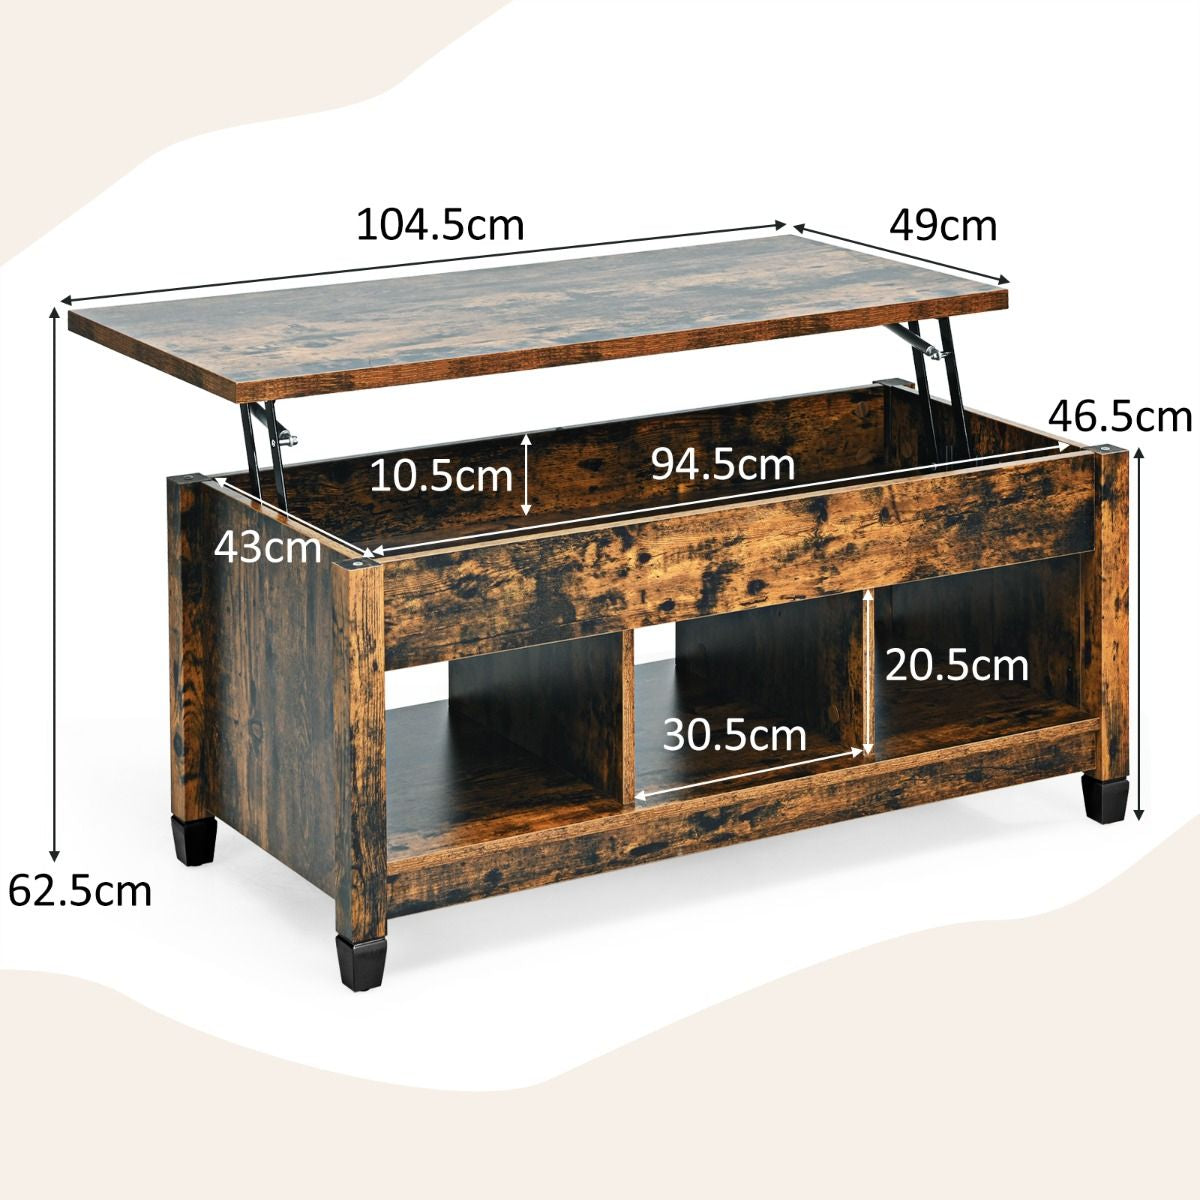 Table Basse avec Plateau Relevable 3 Compartiments Ouverts pour Rangement Polyvalents pour Salon Bureau Marron